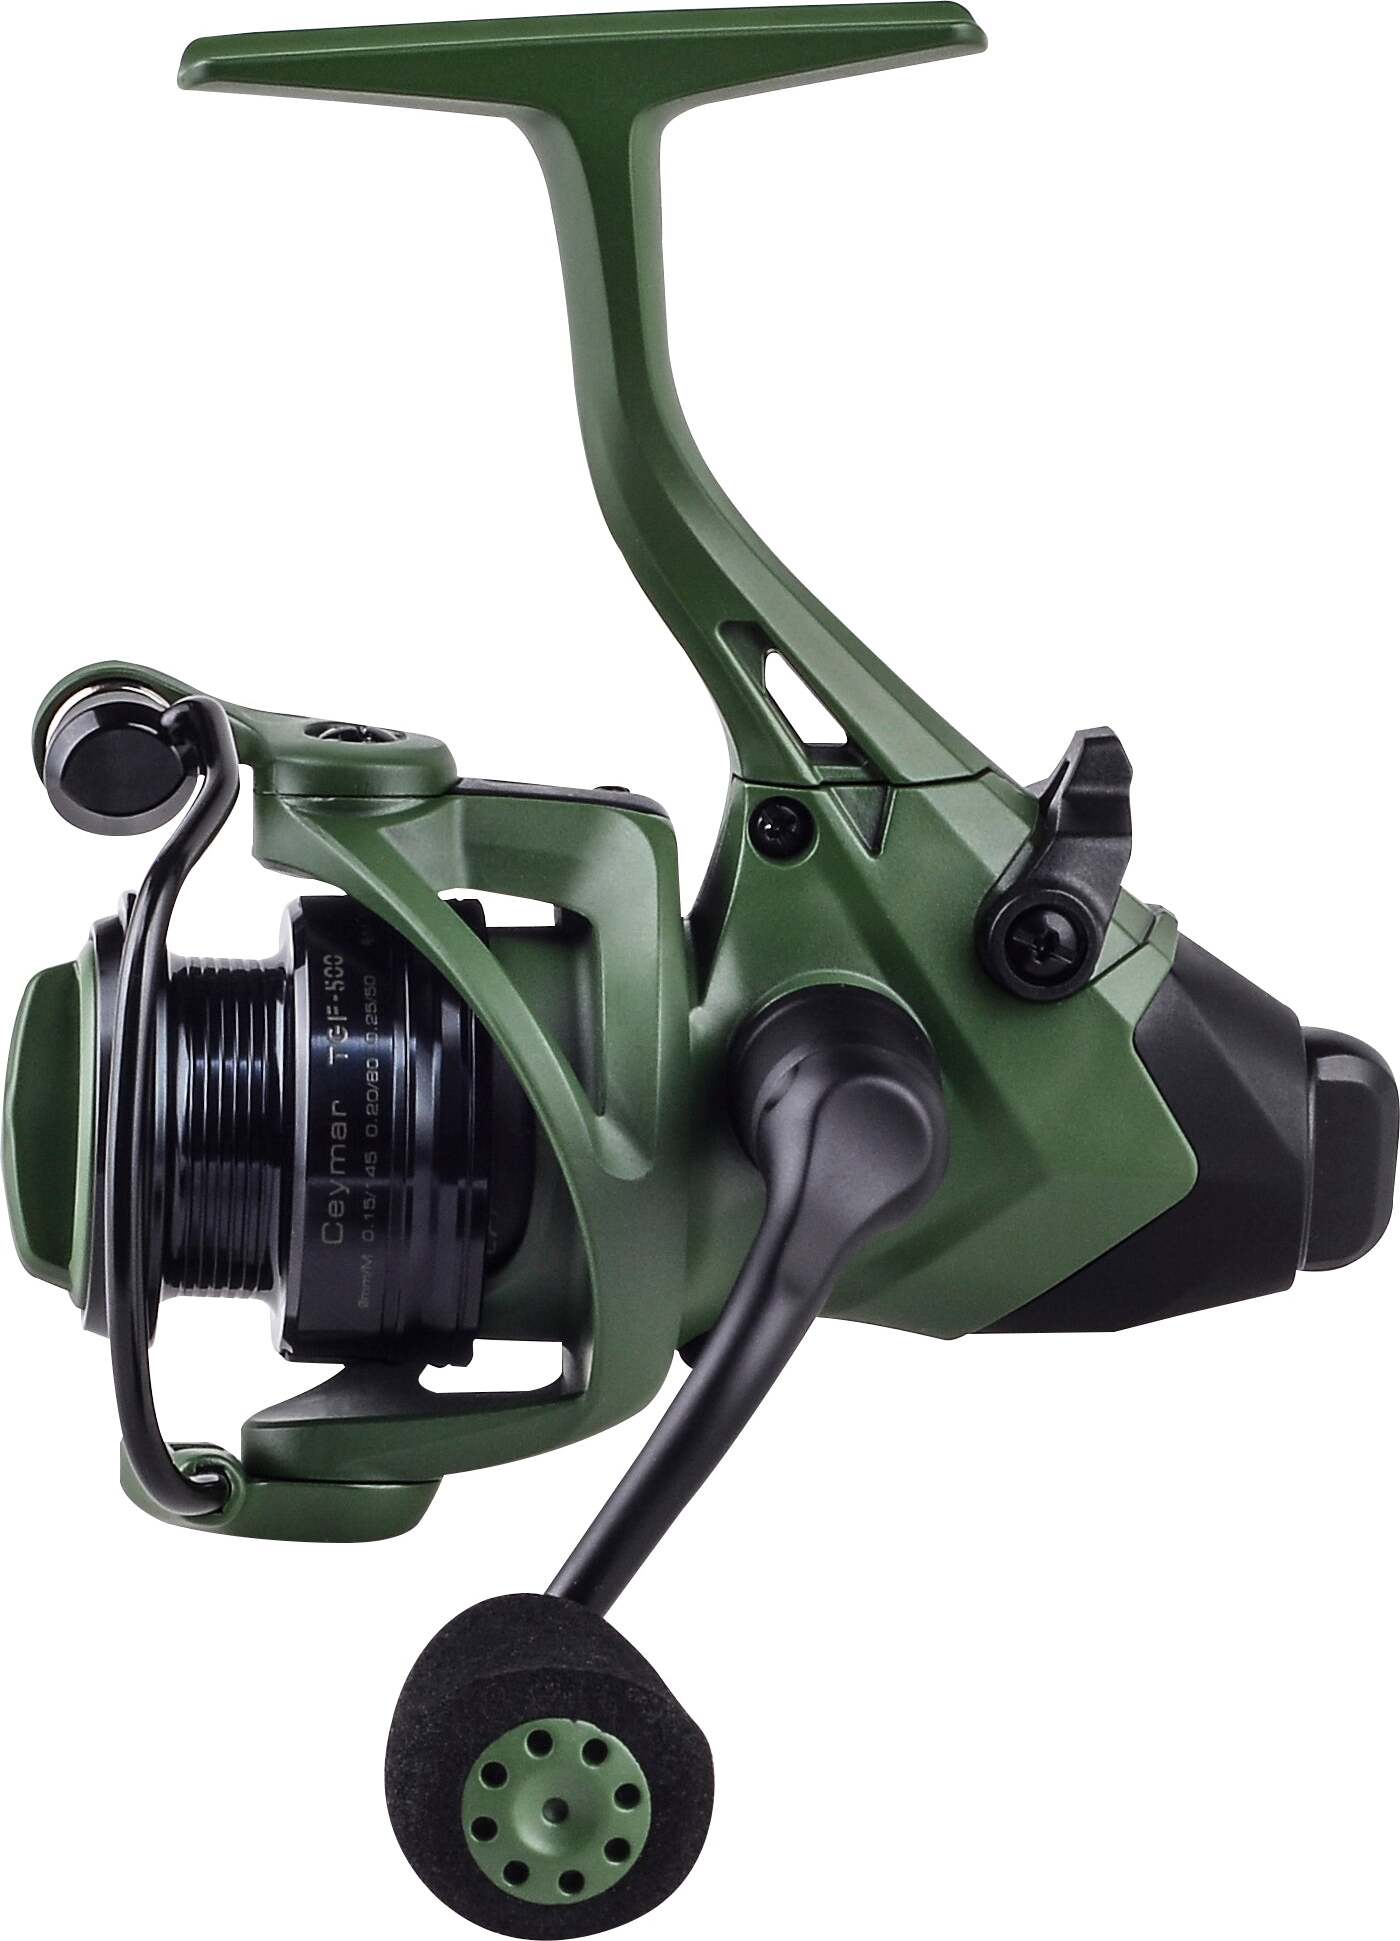 NEW Okuma Ceymar TGF-1000 SPINNING FISHING Reel (Limited Edition) GREEN for  rod